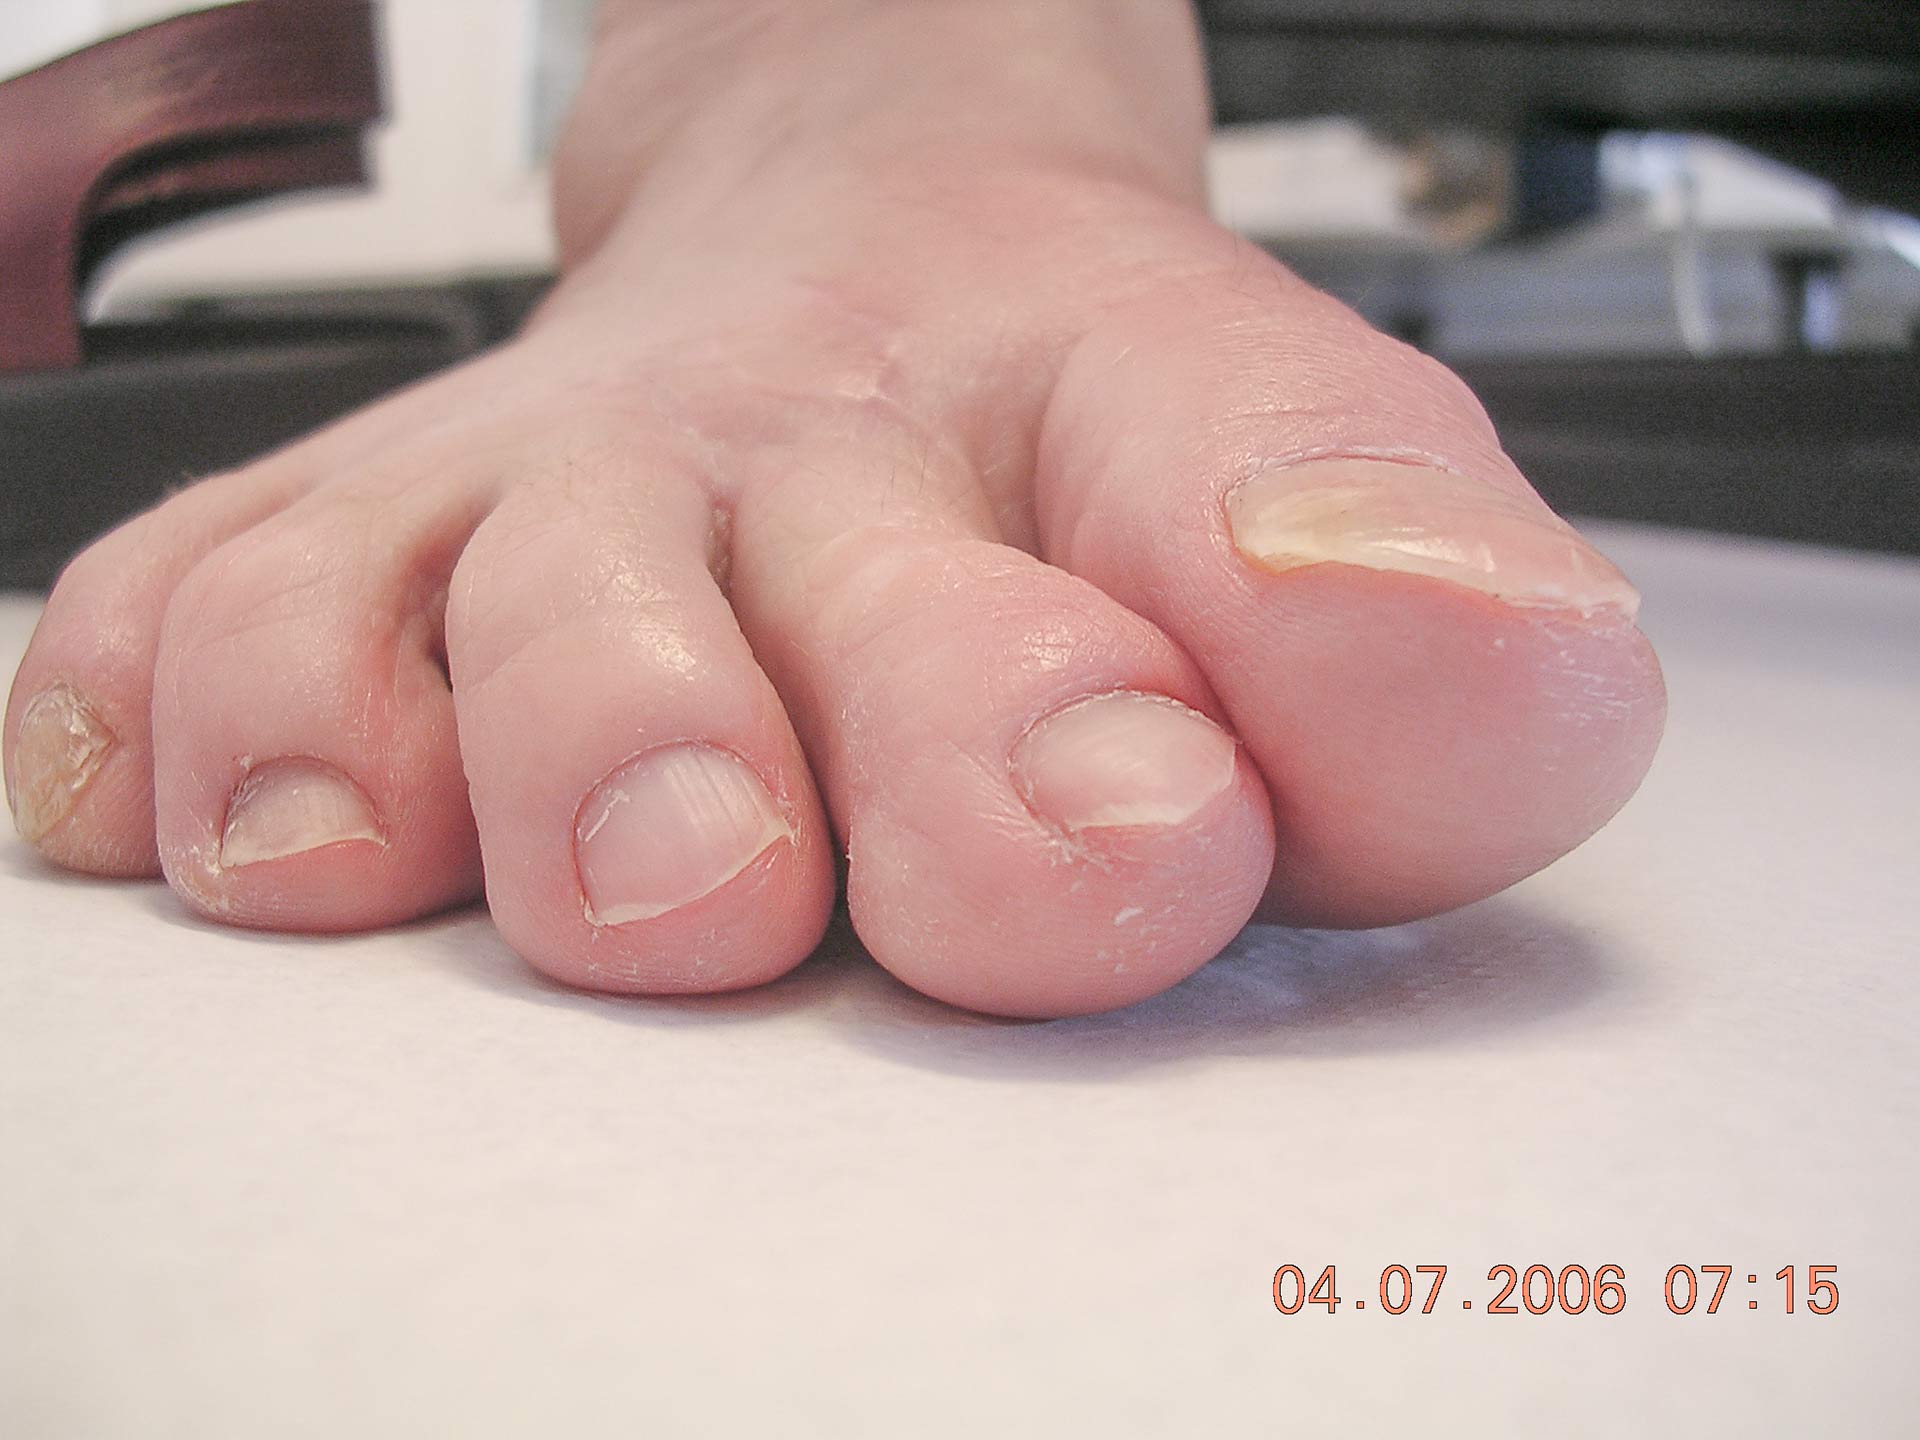 Maestro y Alejo Podología | Tratamiento quirúrgico de juanete con dedo por encima de segundo dedo (primer dedo supracutus) | Postoperatorio 2